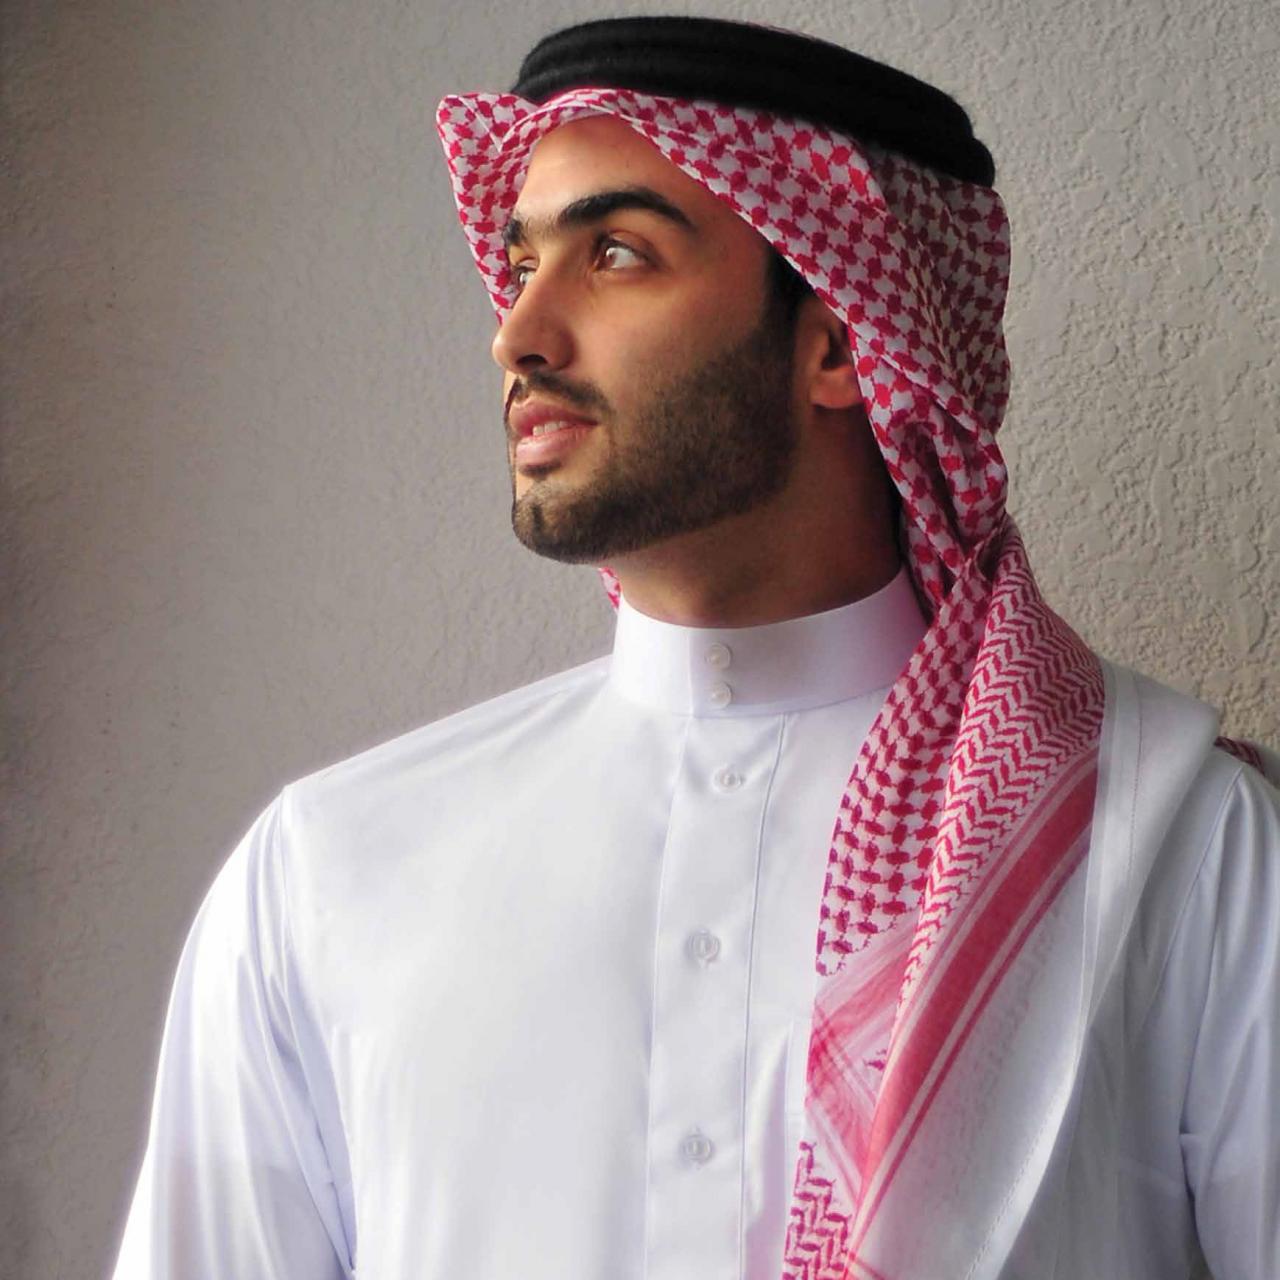 Головной убор в Саудовской Аравии у мужчин. Саудовская Аравия одежда мужчин. Головной убор в Эмиратах. Араб. Телефон арабов